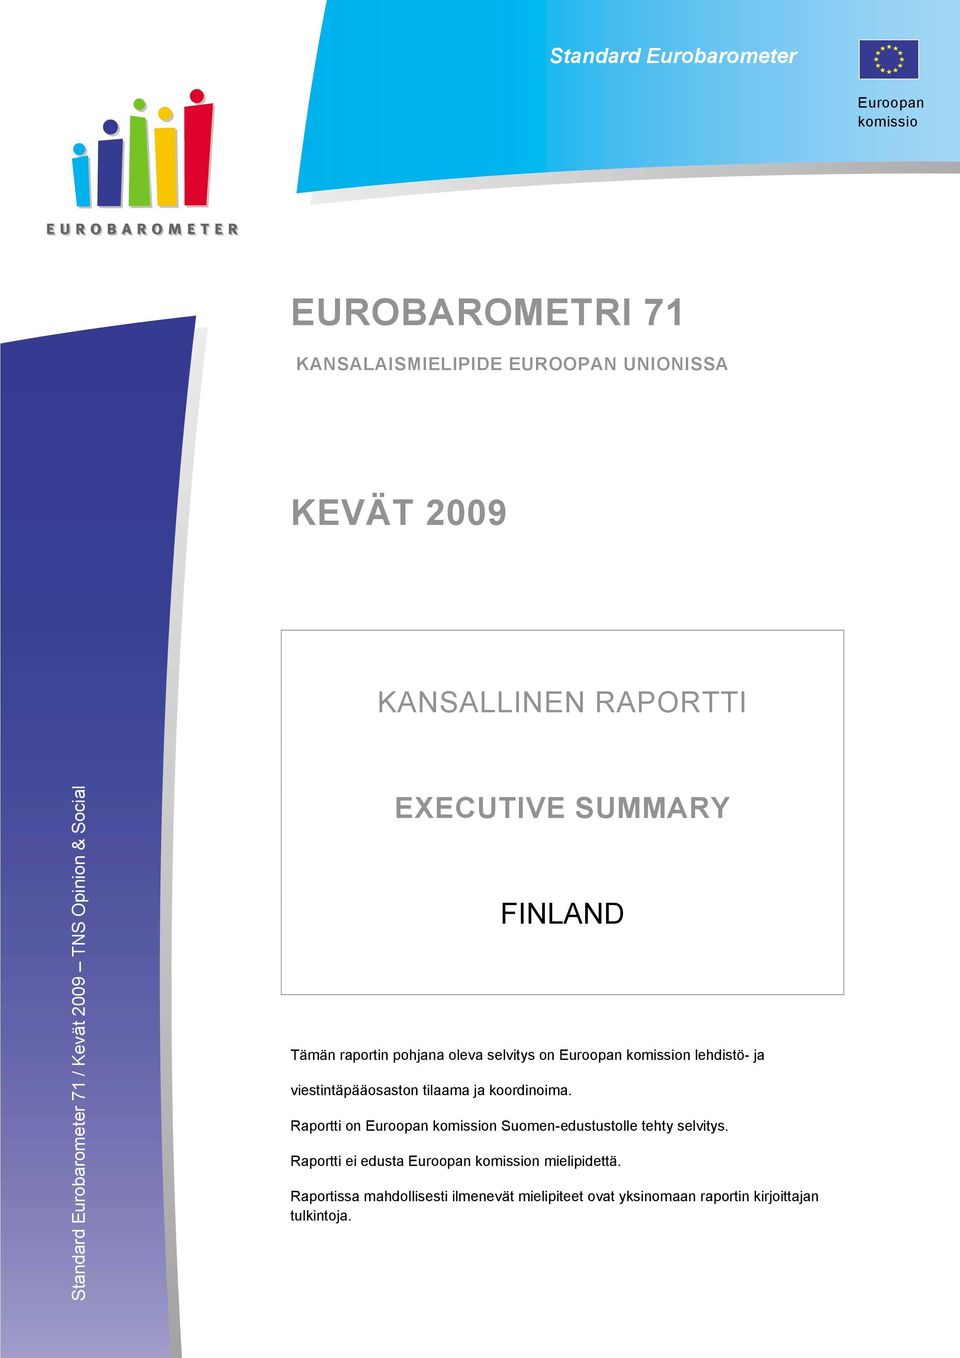 komission lehdistö- ja viestintäpääosaston tilaama ja koordinoima. Raportti on Euroopan komission Suomen-edustustolle tehty selvitys.